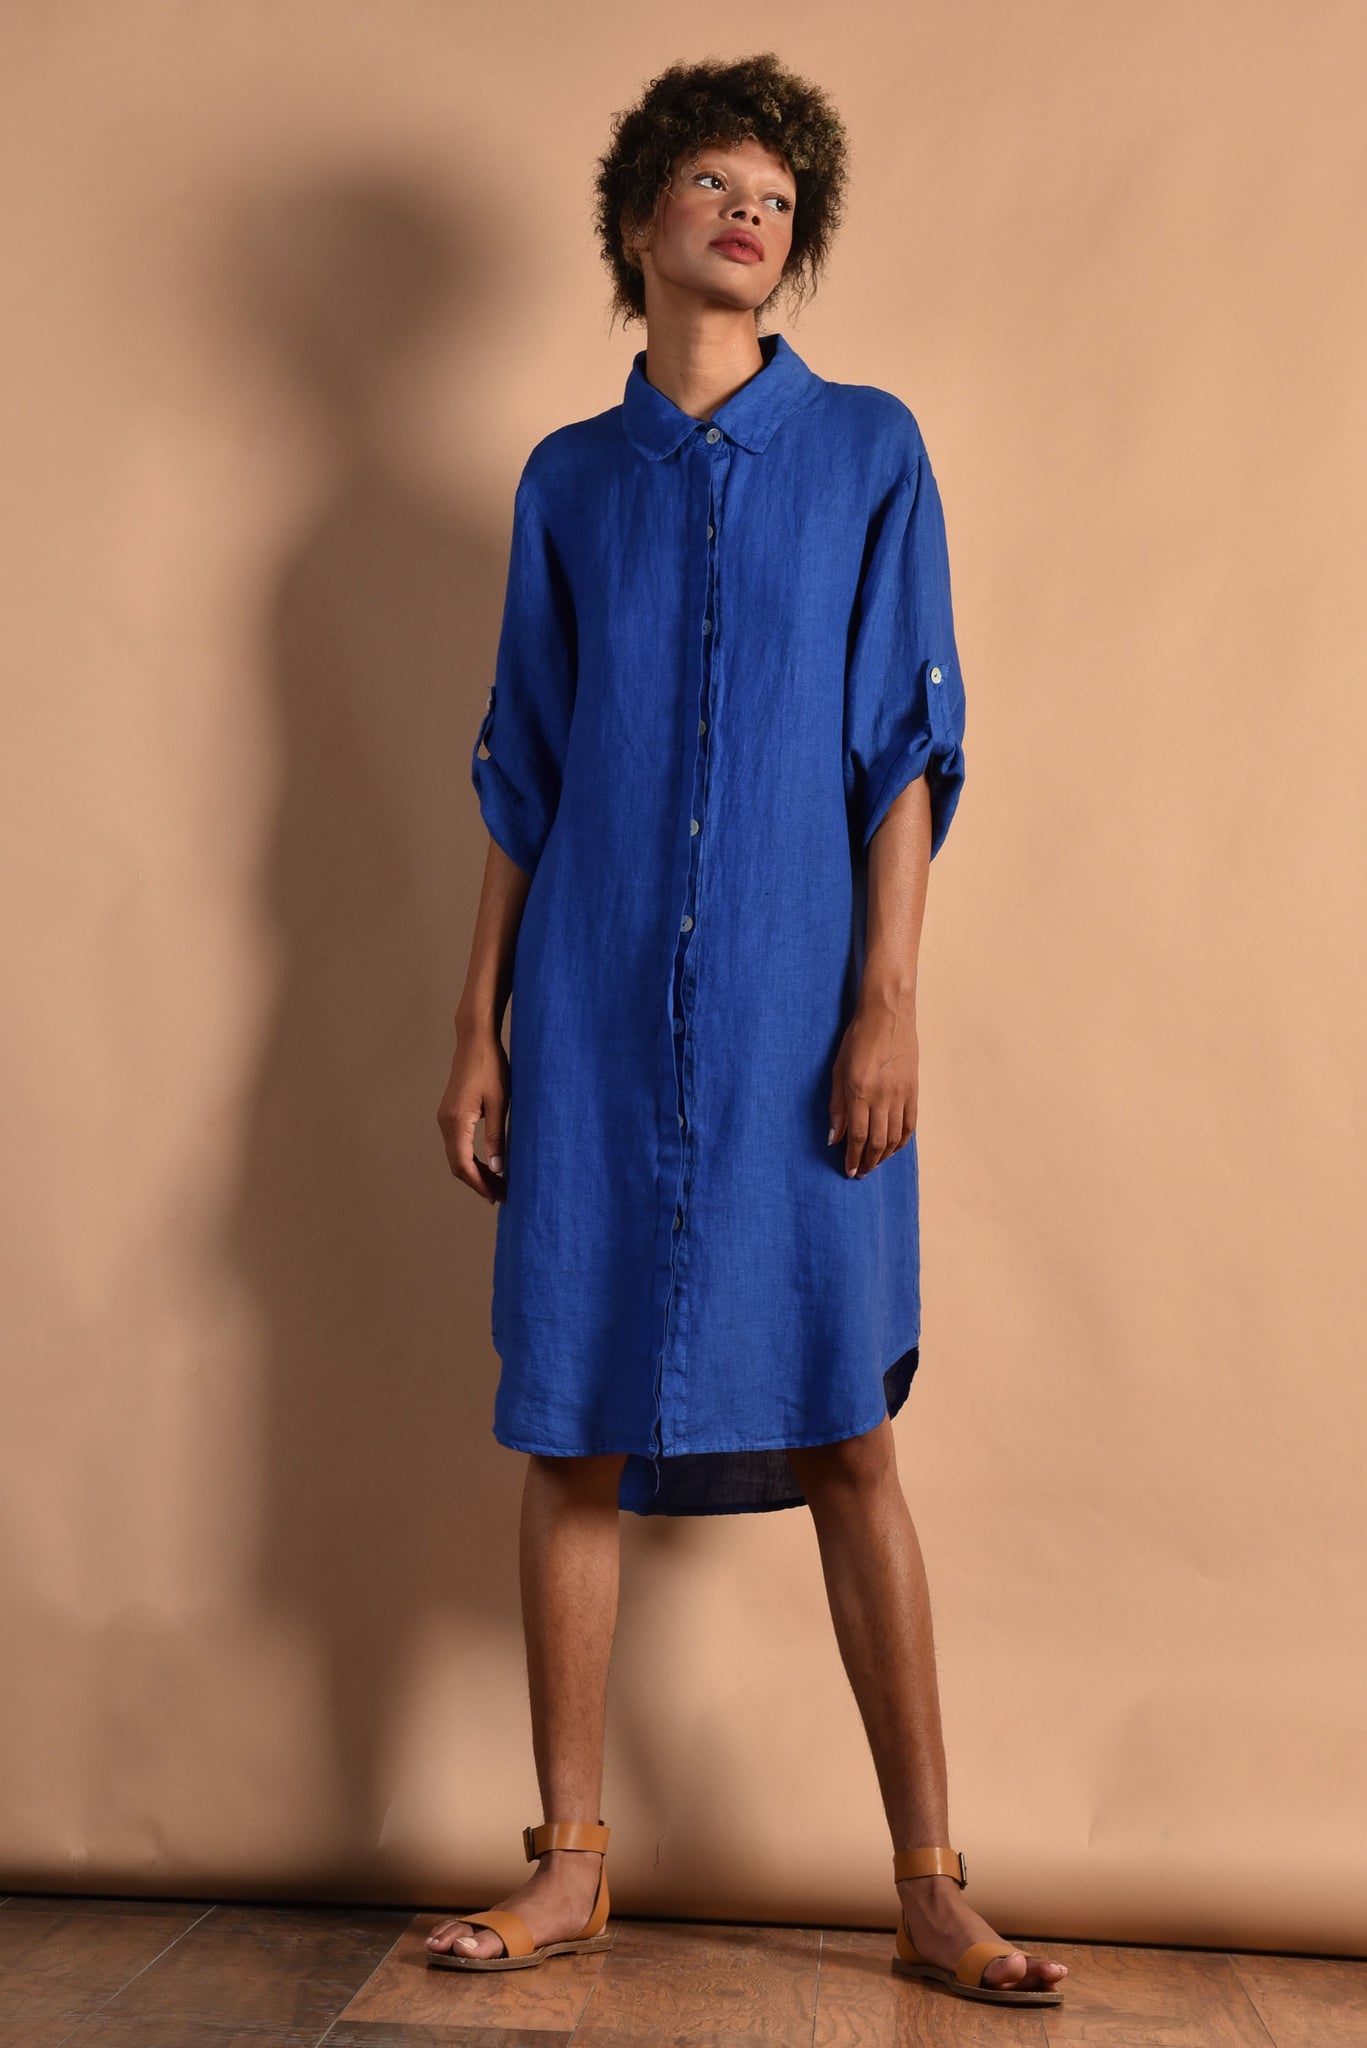 https://bustownmodern.net/cdn/shop/products/Bustown-Modern-Vintage-1990s-90s-indigo-blue-linen-minimal-minimalist-flax-button-up-shirt-dress-5_1024x1024@2x.jpg?v=1627564245